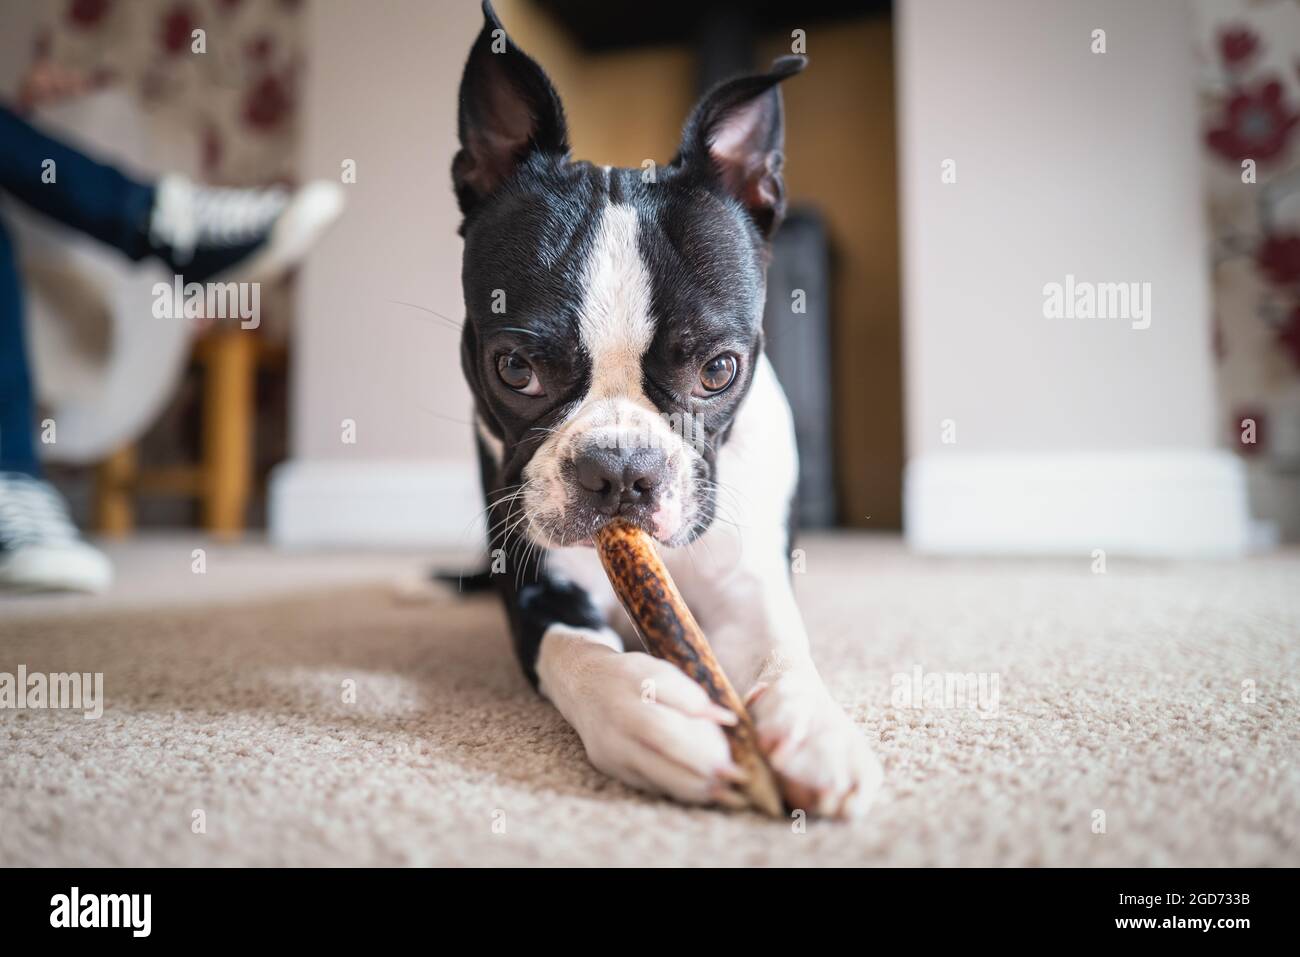 Il cucciolo di Boston Terrier giace sul pavimento masticando un bastone, guardando la macchina fotografica. Foto Stock